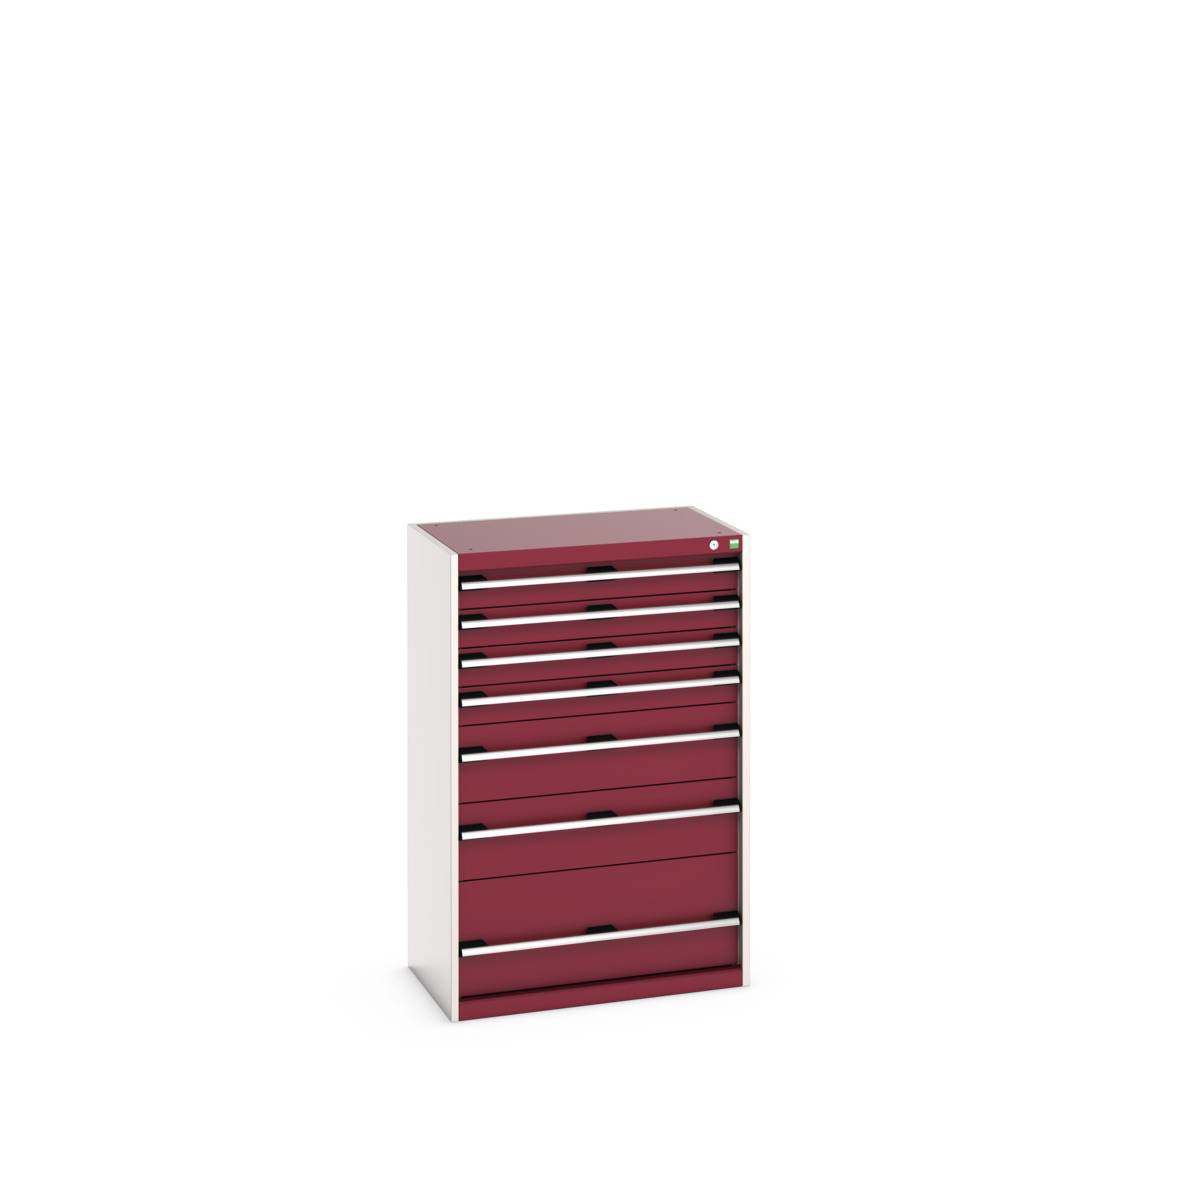 40012104.24V - cubio drawer cabinet